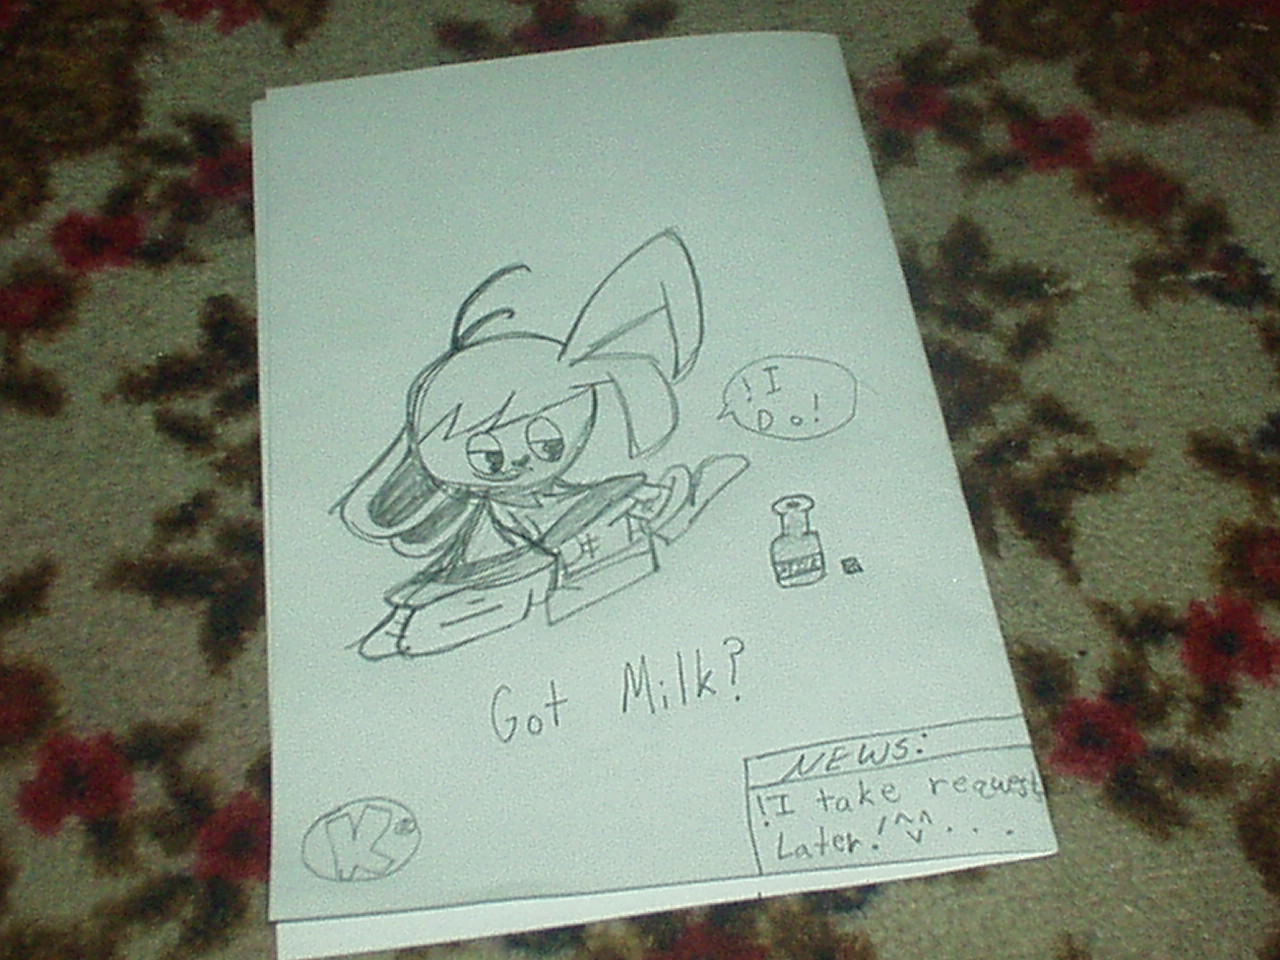 Got Milk? by KOOLGAMES